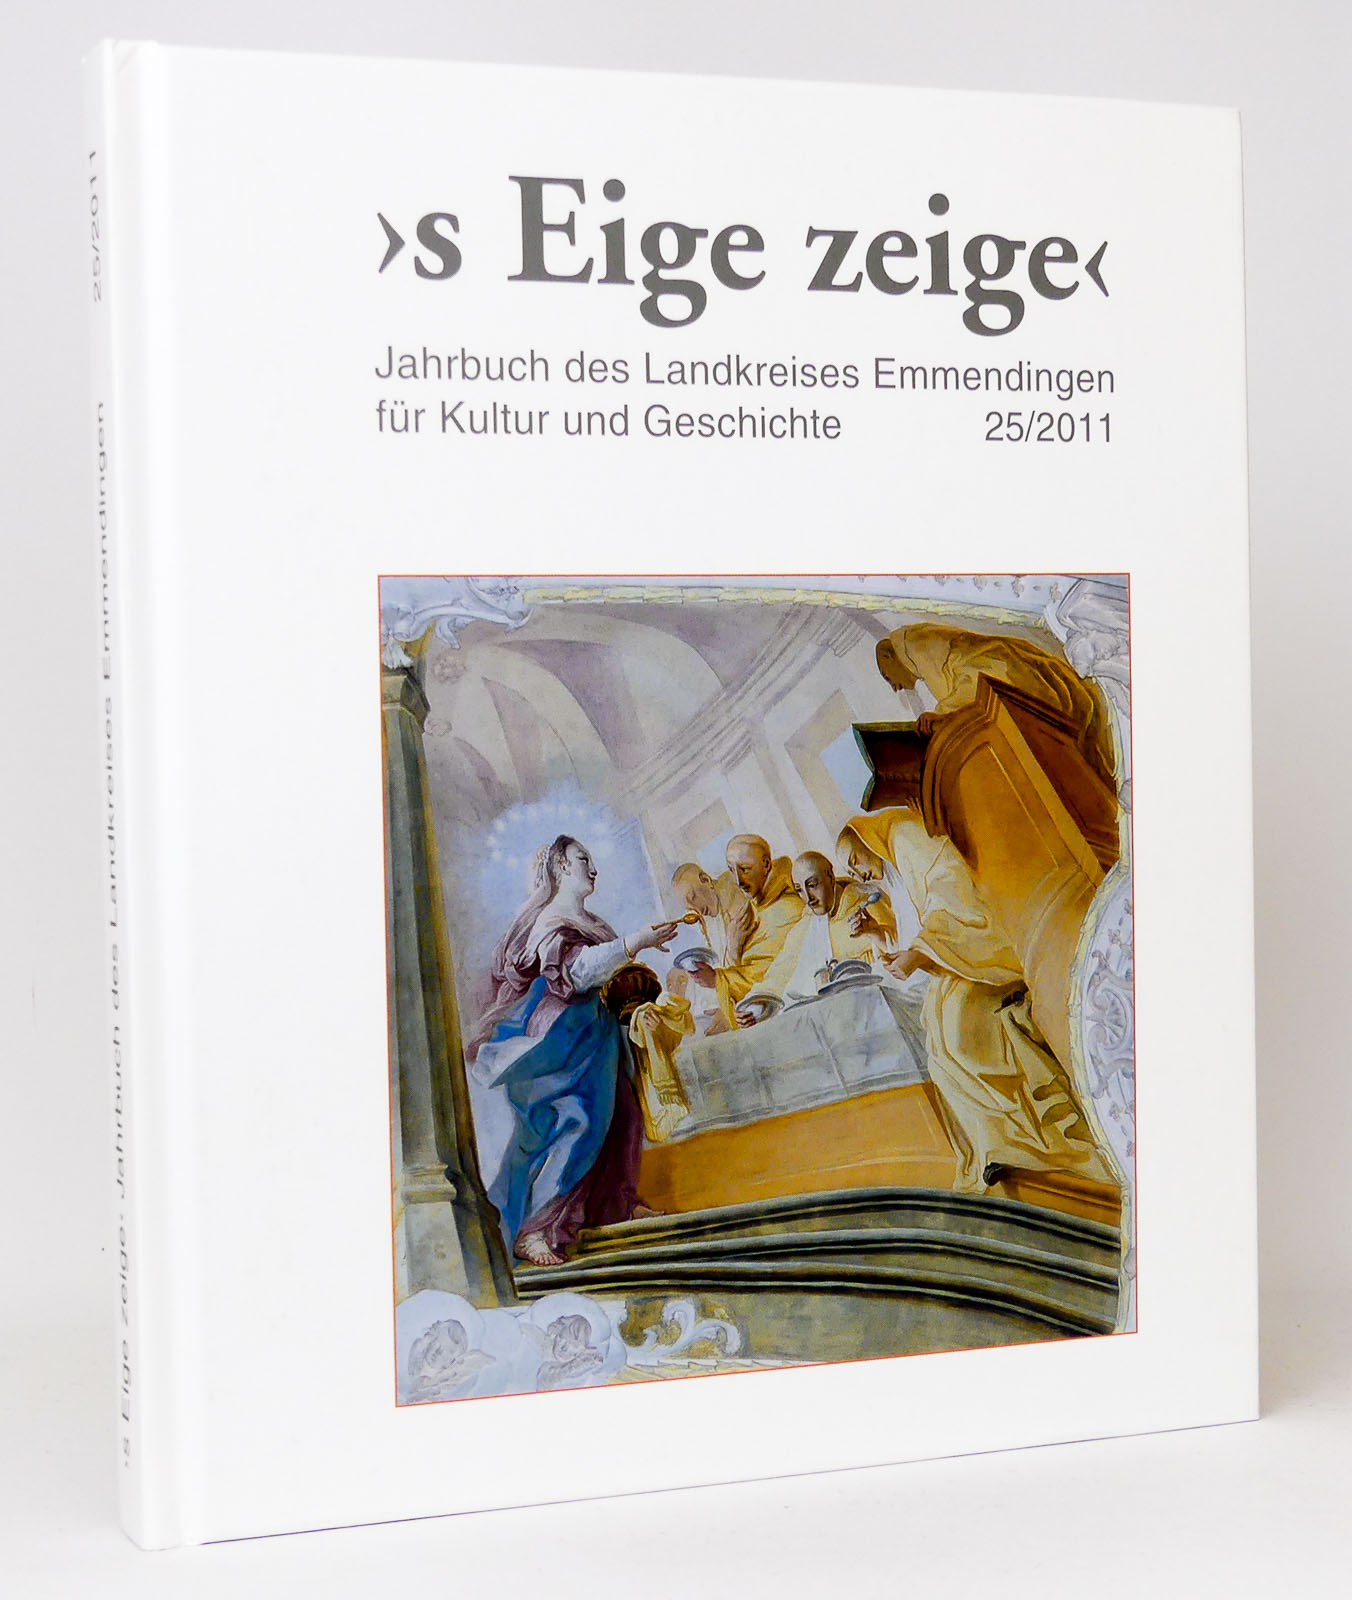 > s Eige zeige <Jahrbuch des Landkreises Emmendingen für Kultur und Geschichte 25/2011